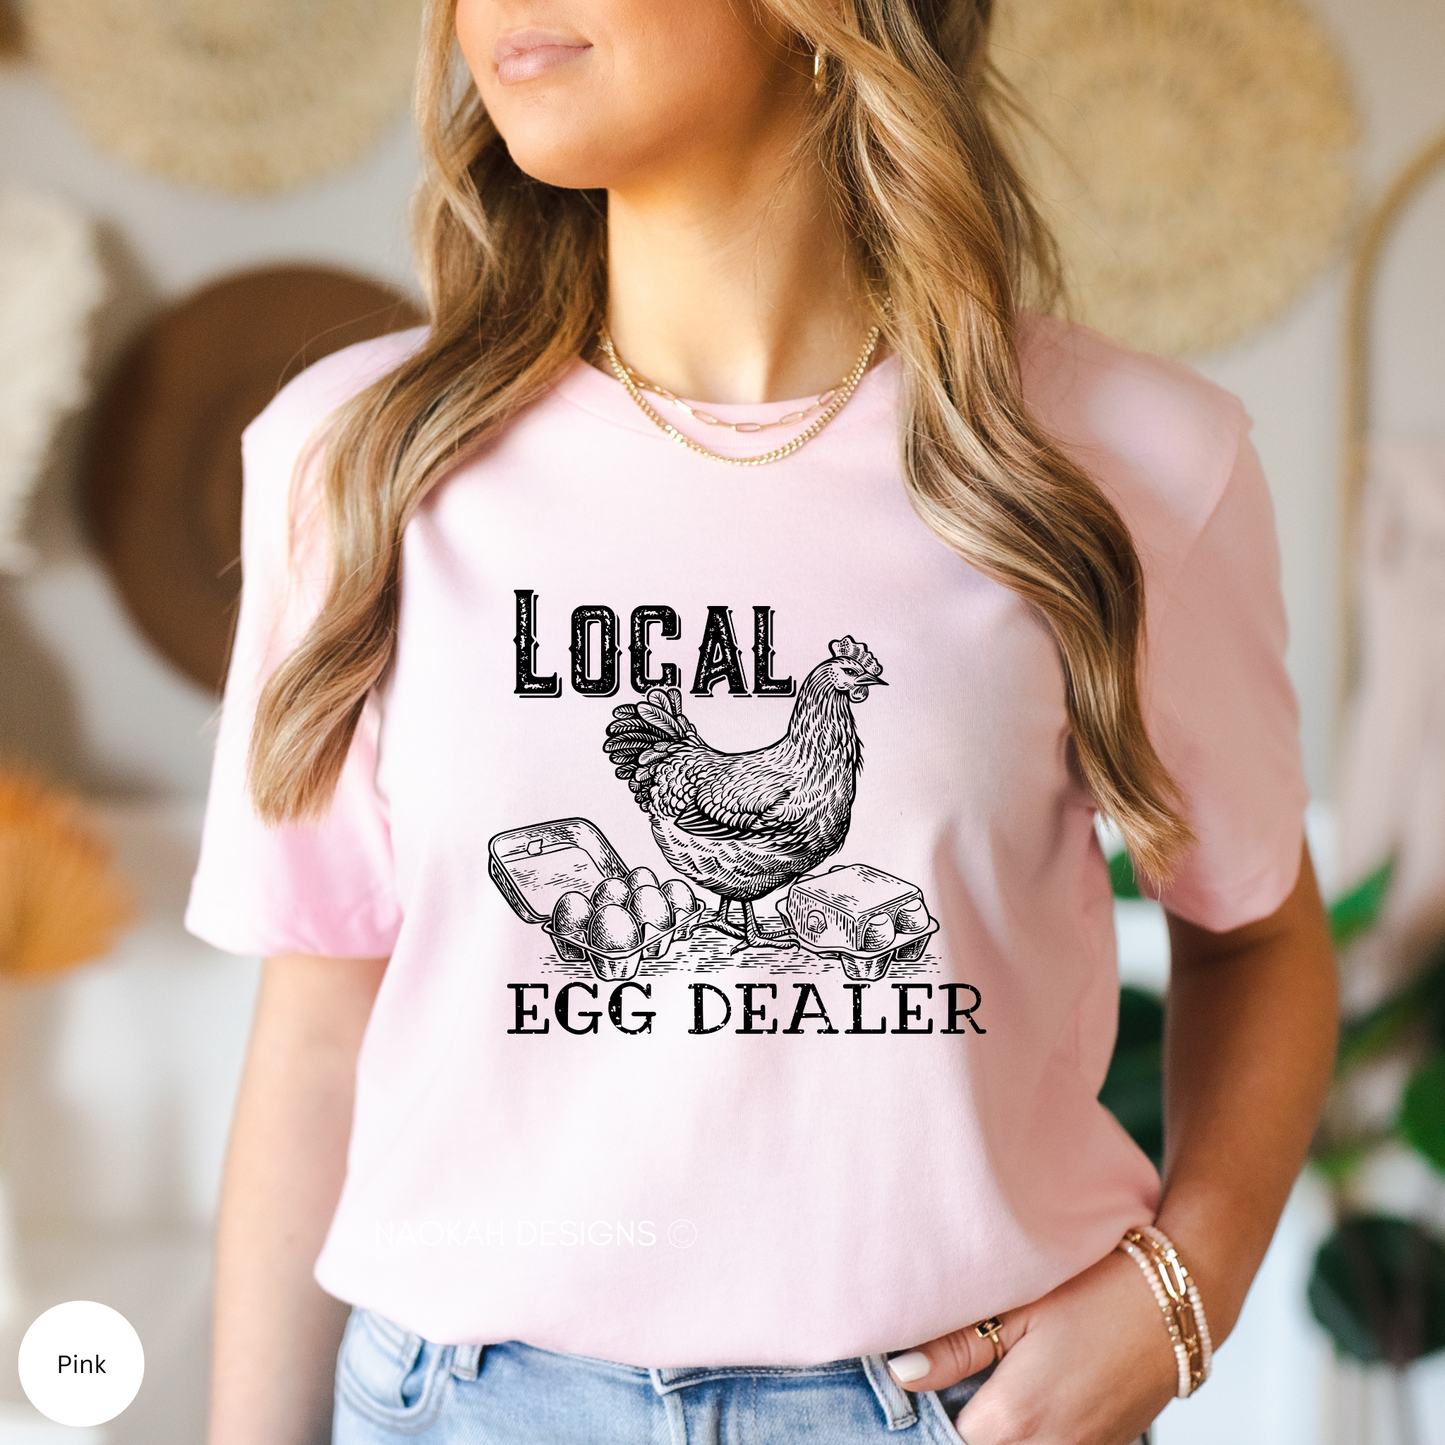 local egg dealer shirt, funny chicken shirt, hen shirt, farmers shirt, chicken tee, support local farmer shirt, crazy chicken lady shirt